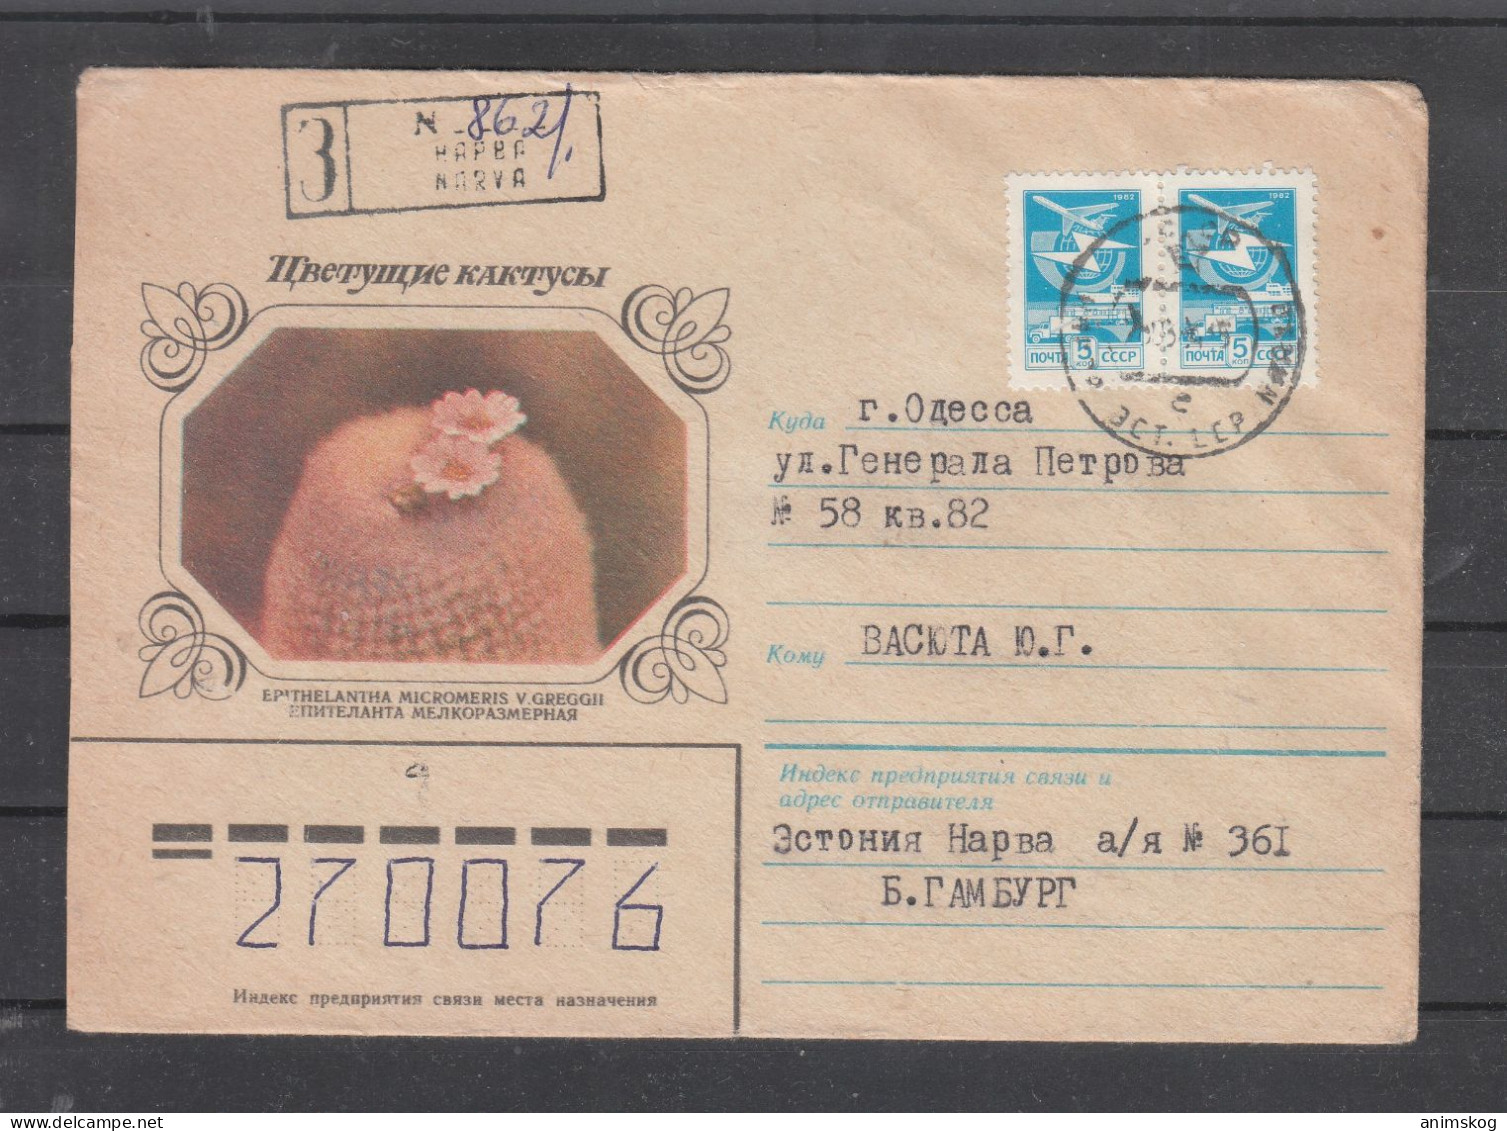 UdSSR, R-Ganzsachenbrief, Kaktus / USSR, Registered Stationary Cover, Cactus Cachet - Sukkulenten